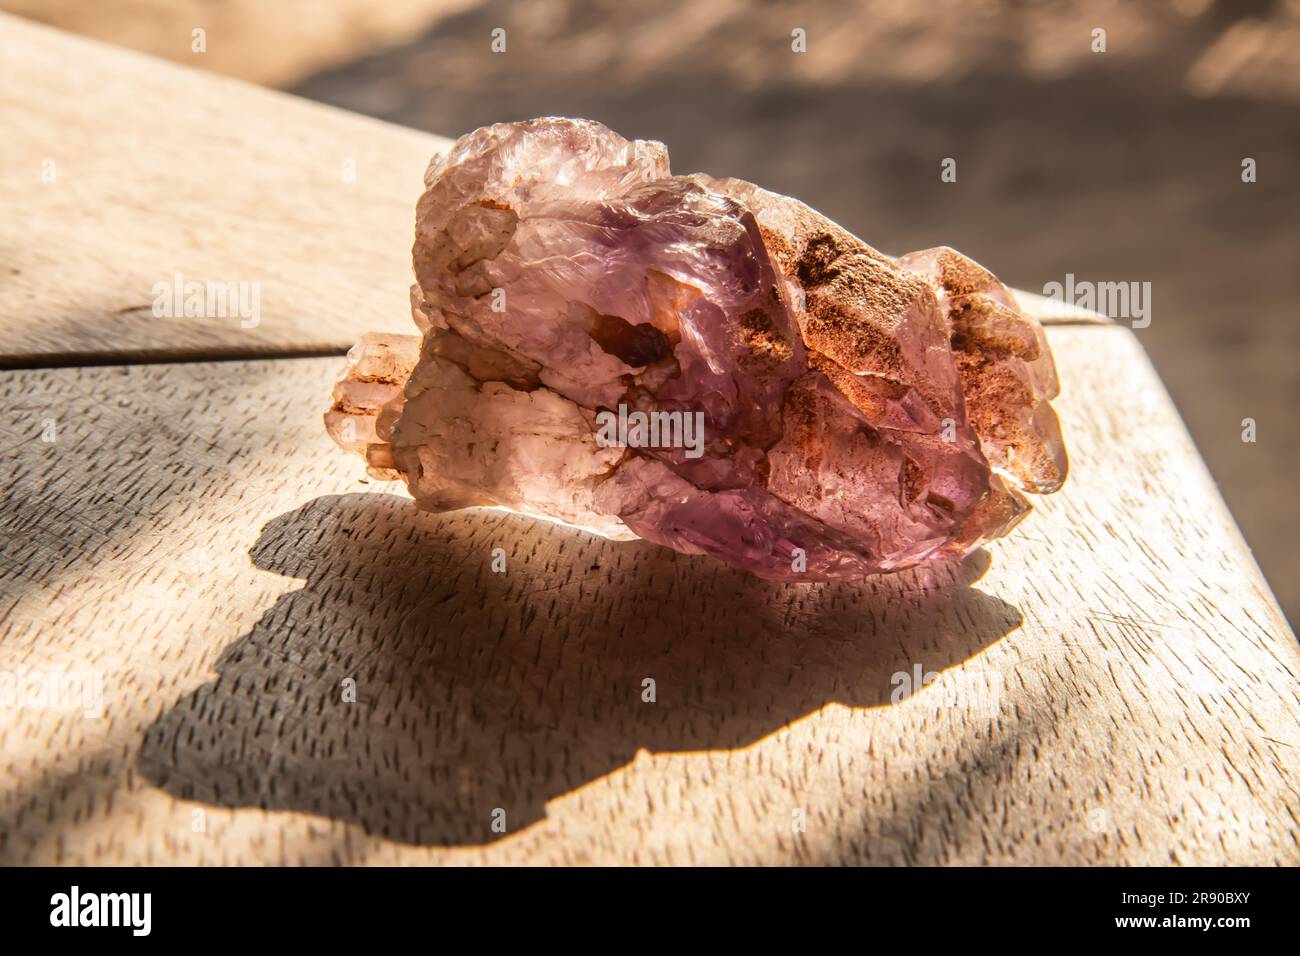 L'améthyste rose, dans son état naturel et non poli, révèle des teintes roses douces avec une clarté translucide. Cette pierre précieuse unique. Banque D'Images